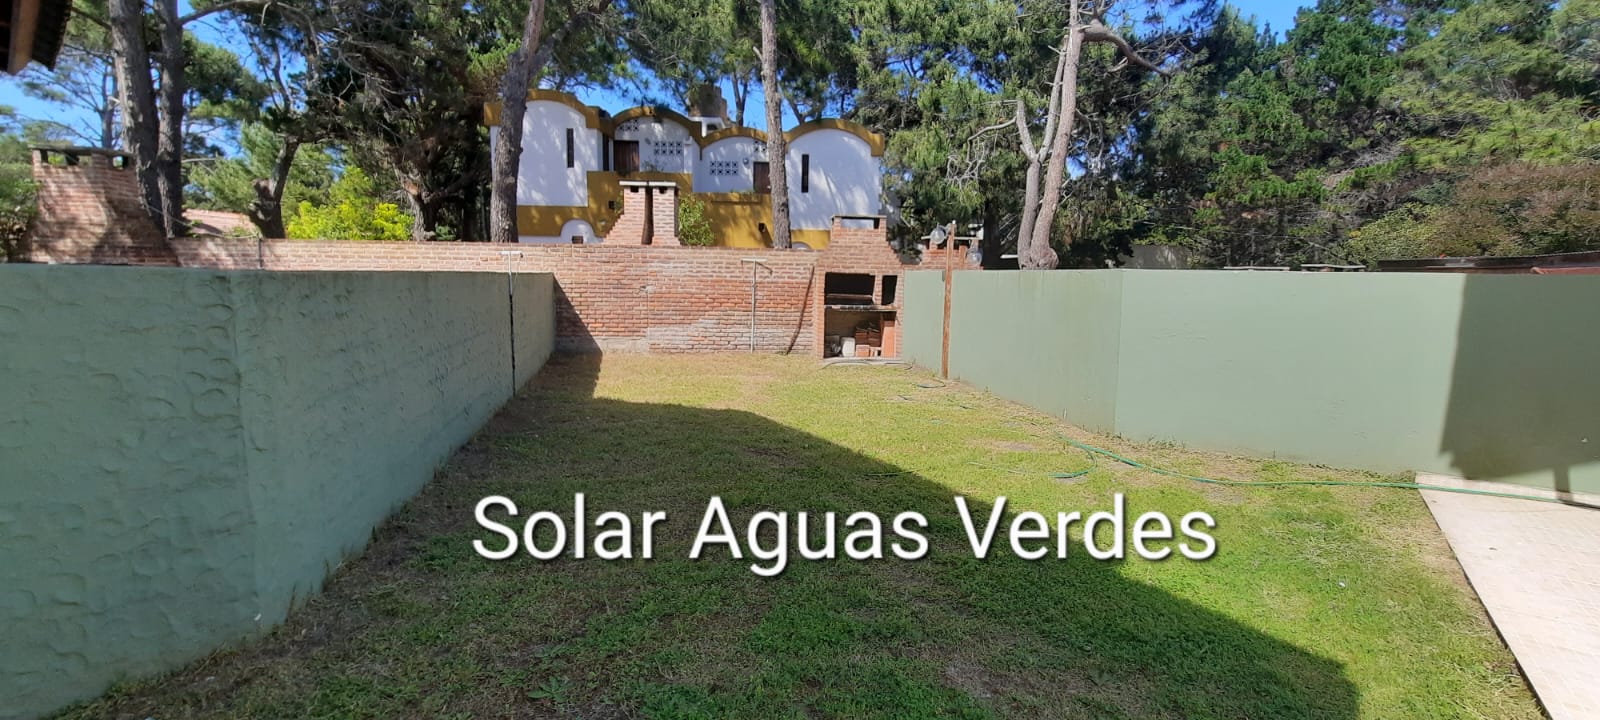 Solar Aguas Verdes - 4 Ambientes - Confort - Detalles de categoria - Entrada de Auto - Ubicados a 2 1/2 cuadras del mar - pleno centro - Dúplex/Tríplex en Aguas Verdes